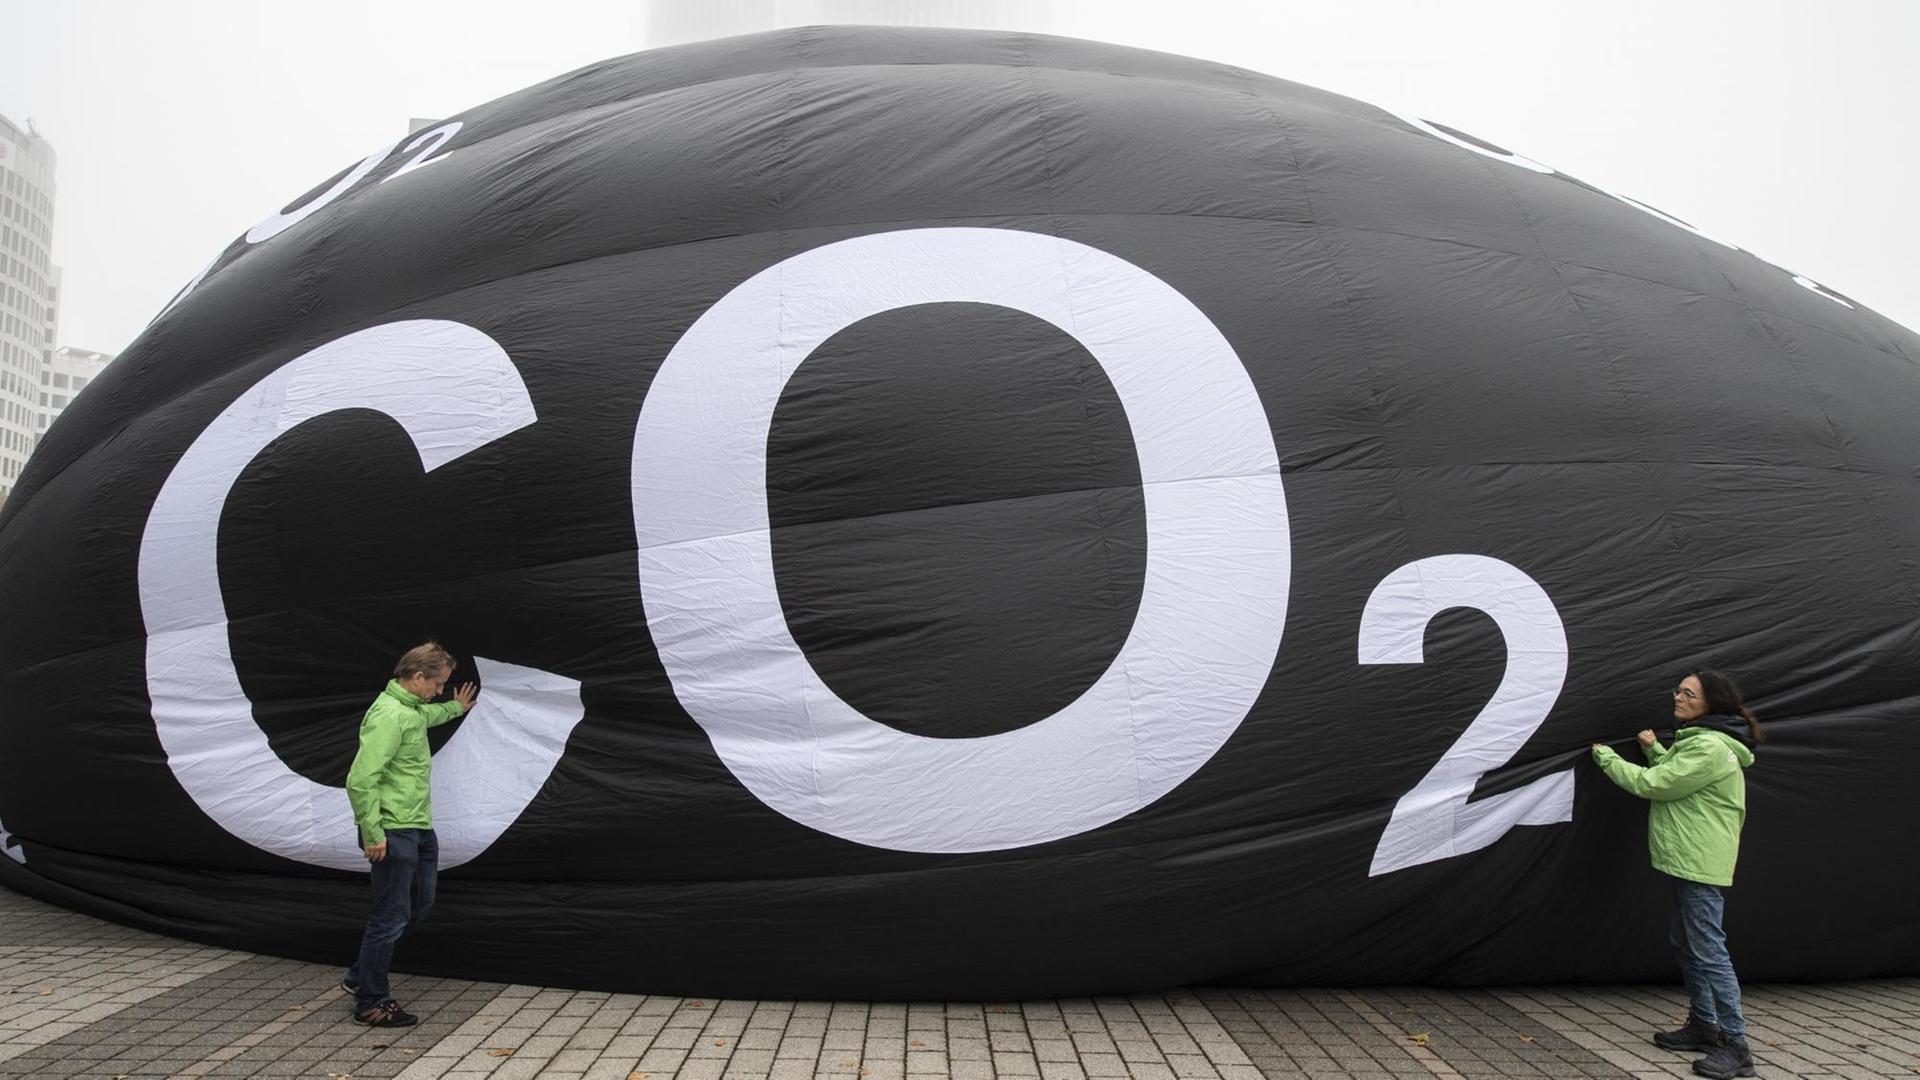 Frankfurt/Main: Aktivisten von Greenpeace füllen vor der Messe IAA einen riesigen Ballon mit Luft. Auf dem Ballon steht "CO2".